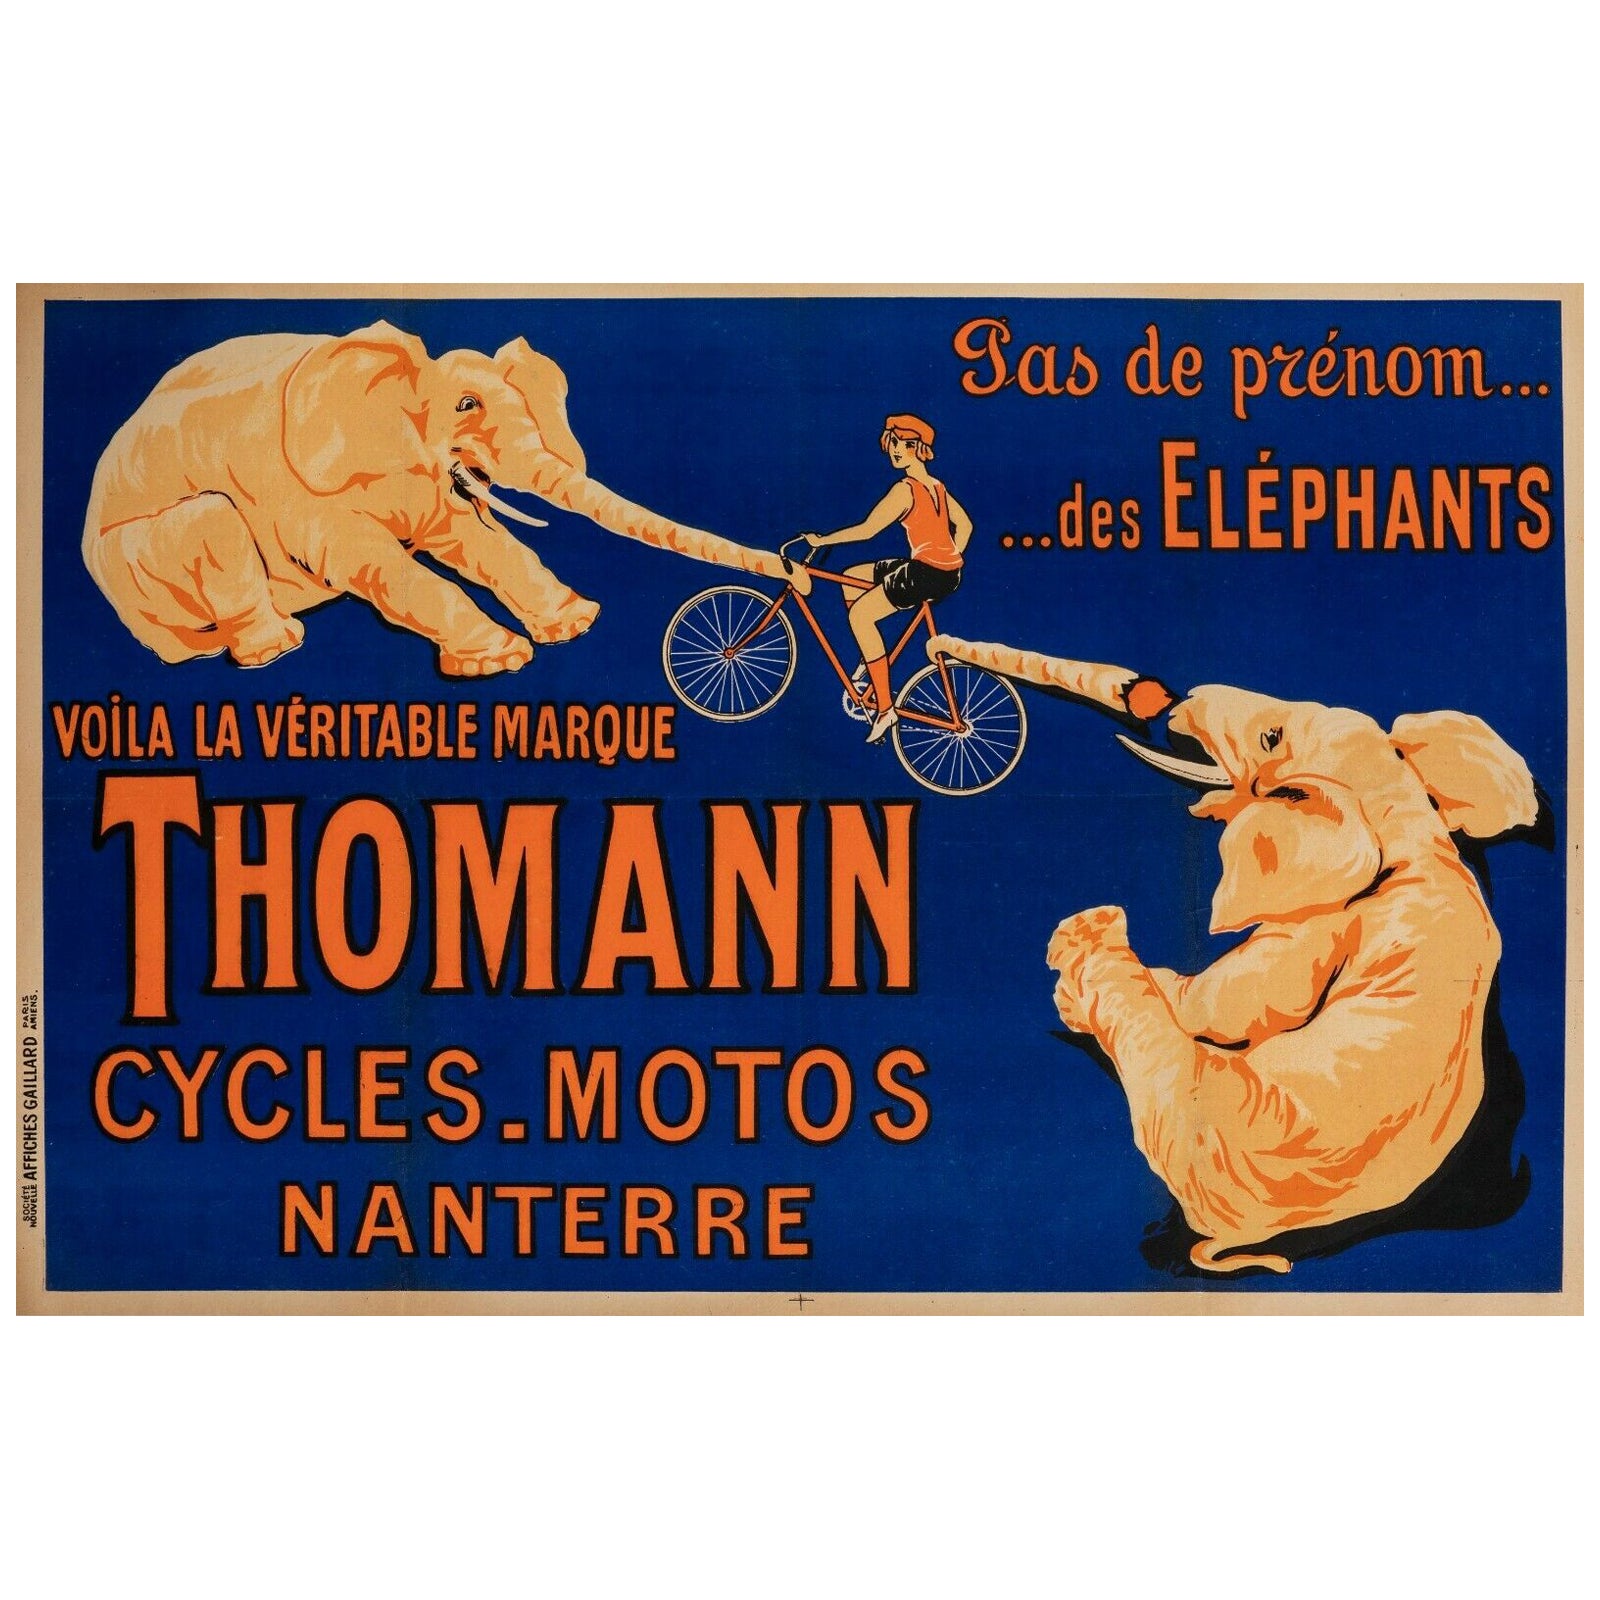 Affiche vintage originale - Cycles Motos Thomann-Elephant-Bike, 1926